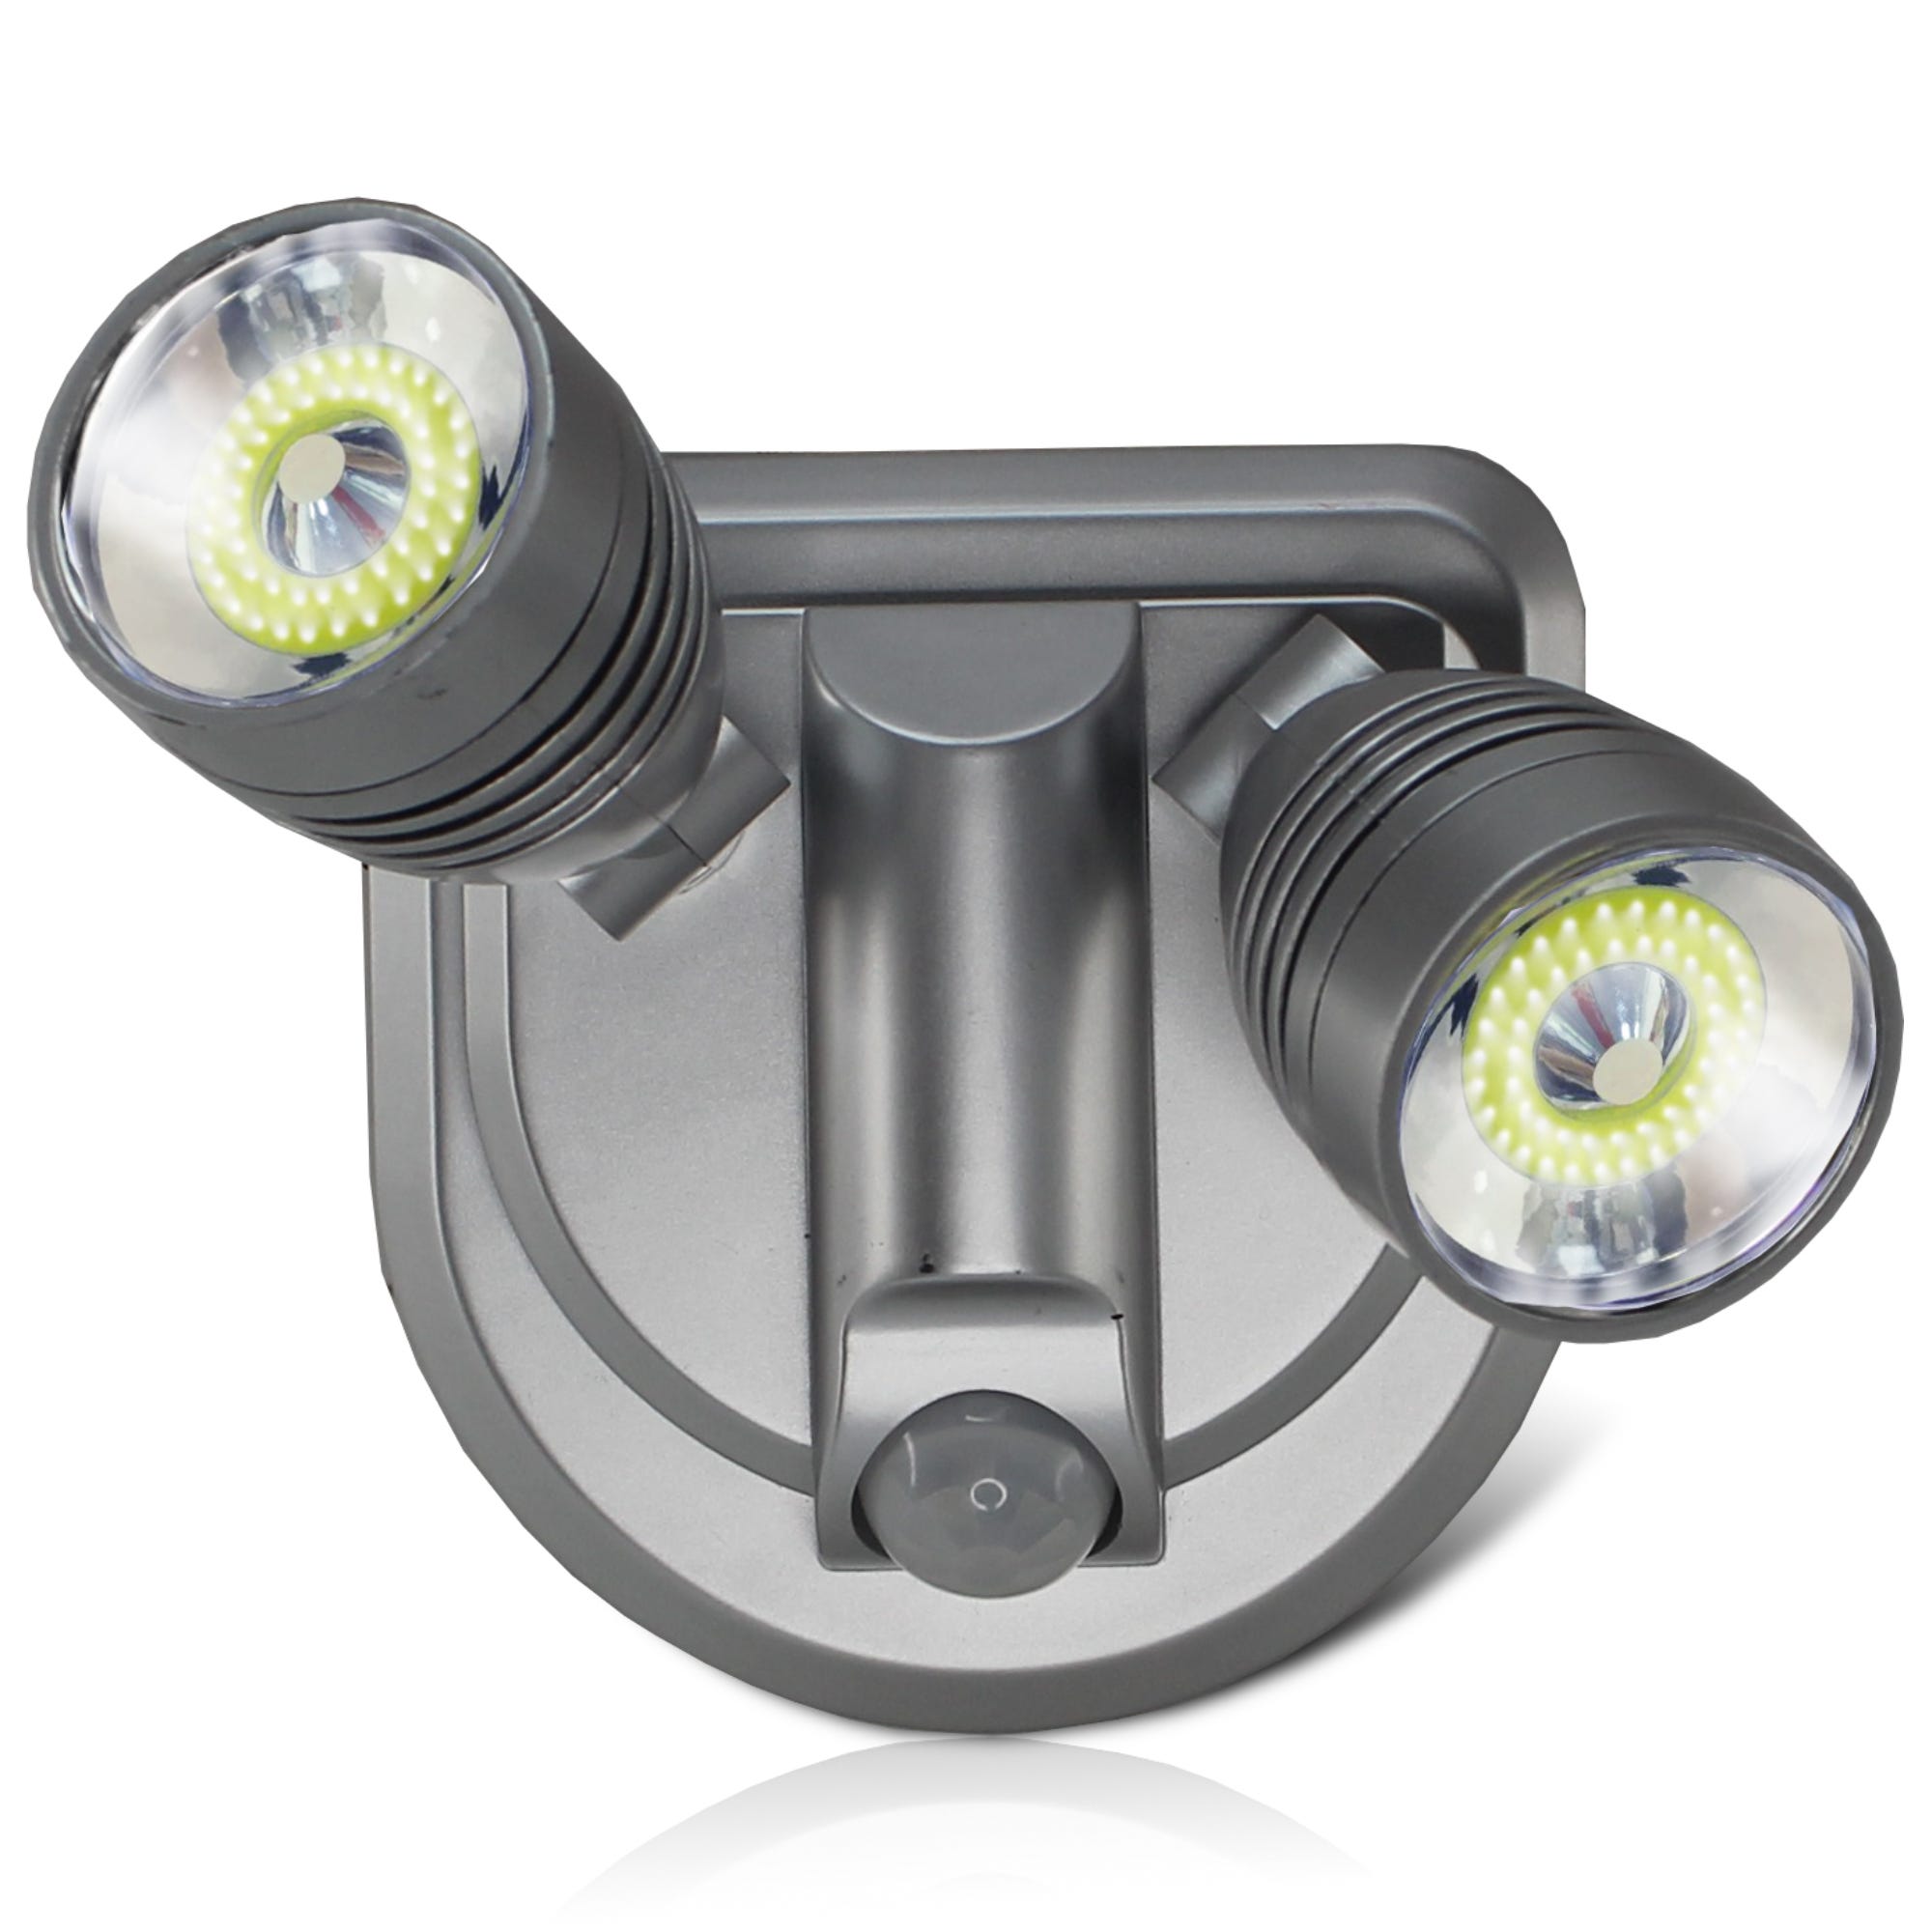 Spot LED COB - Acheter Eclairage, électricité - L'Homme Moderne